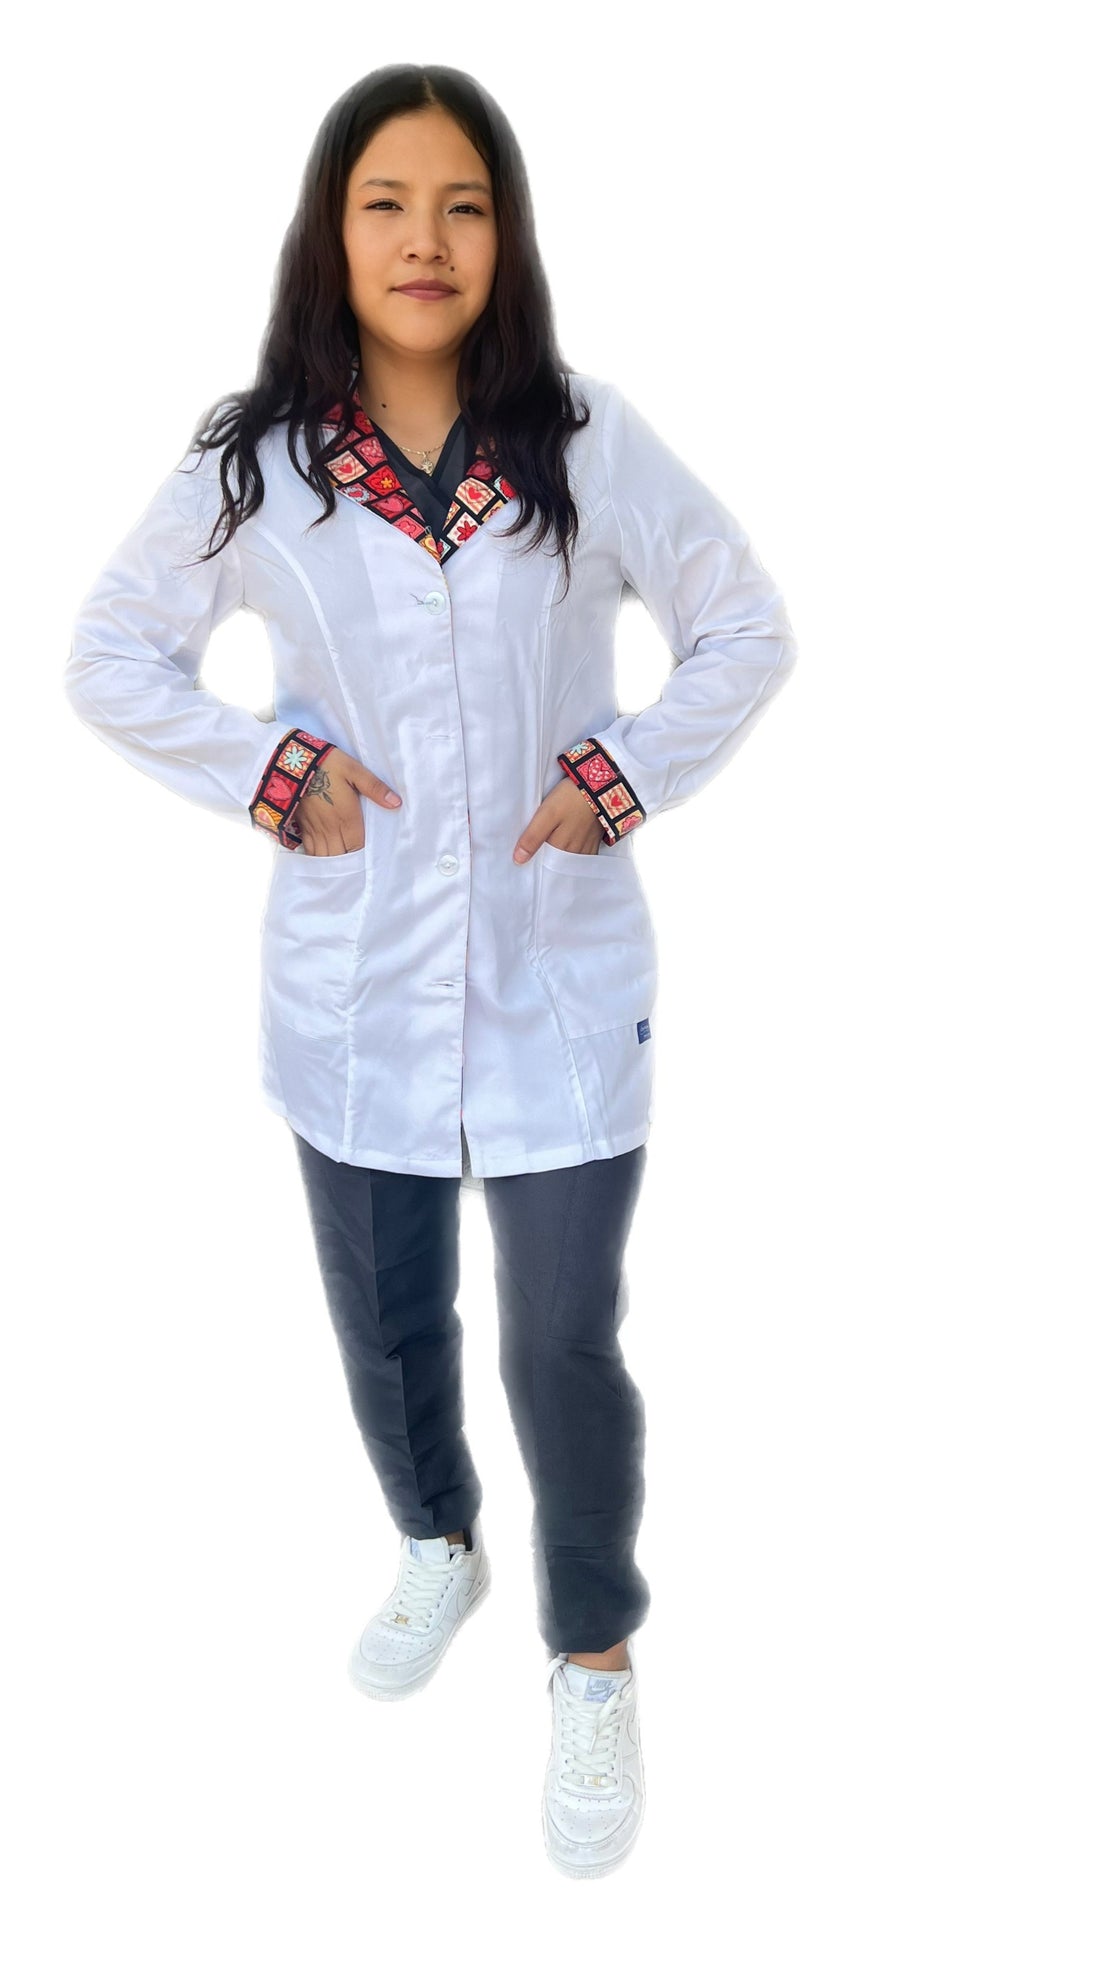 Bata medica uniformes Stanford mujer con estampado